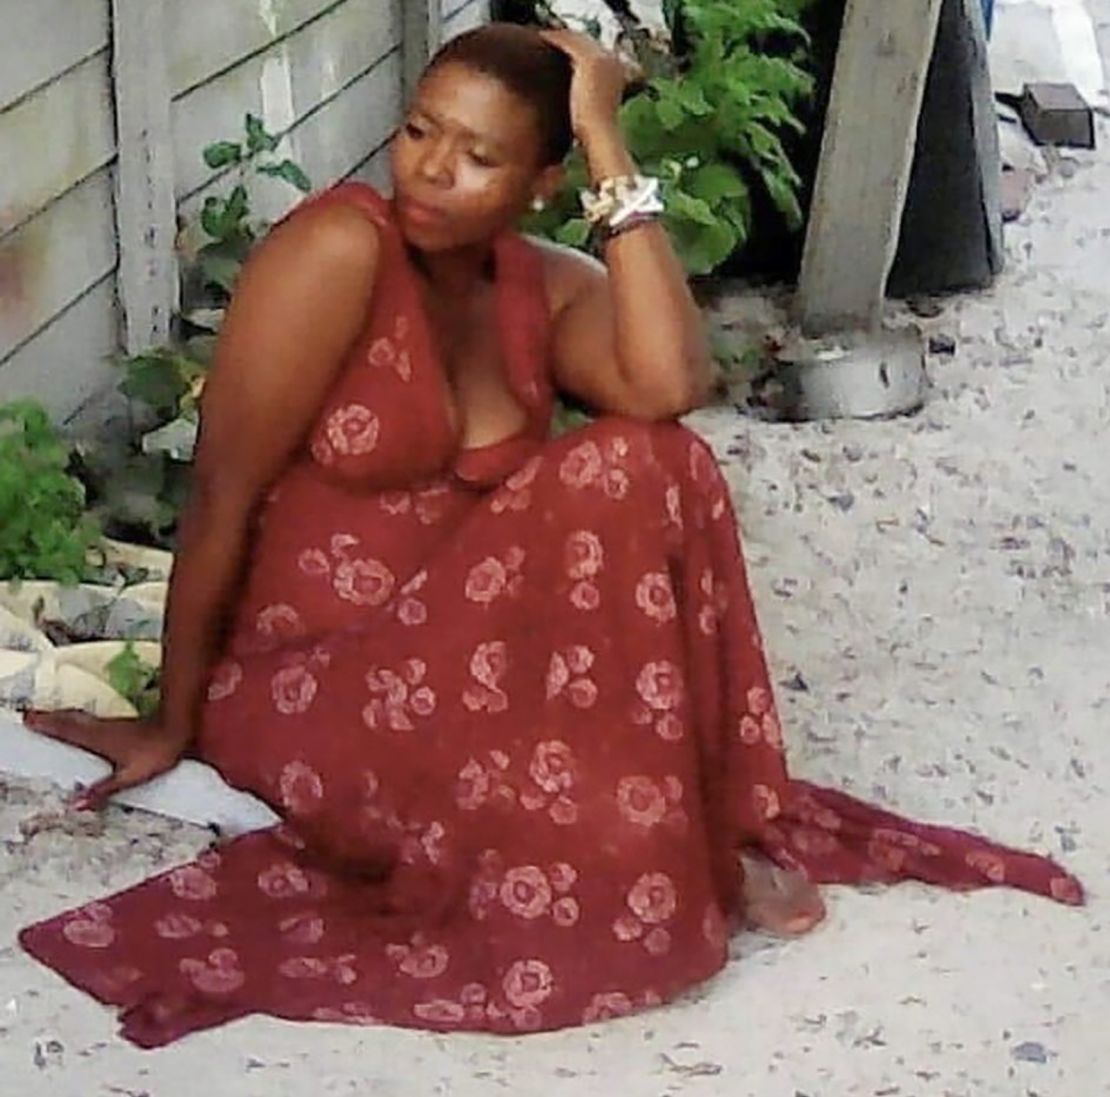 Sibongiseni Gabada's body was dumped in an alleyway in Khayelitsha, near Cape Town.